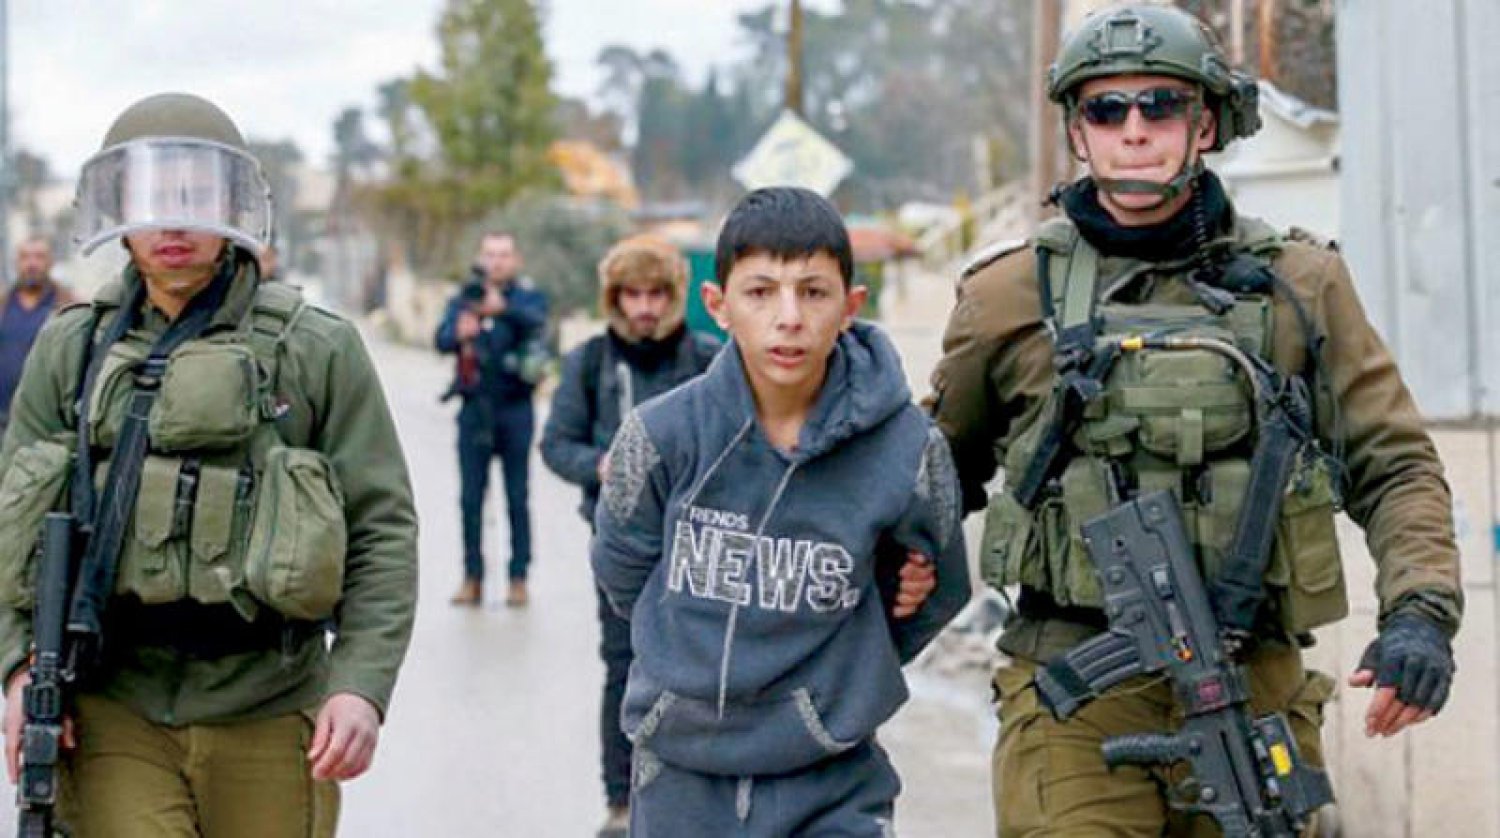 باحثة في قضايا الطفل: منذ 2015 حتى الآن اعتقلت سلطات الاحتلال نحو 10 آلاف طفل فلسطيني